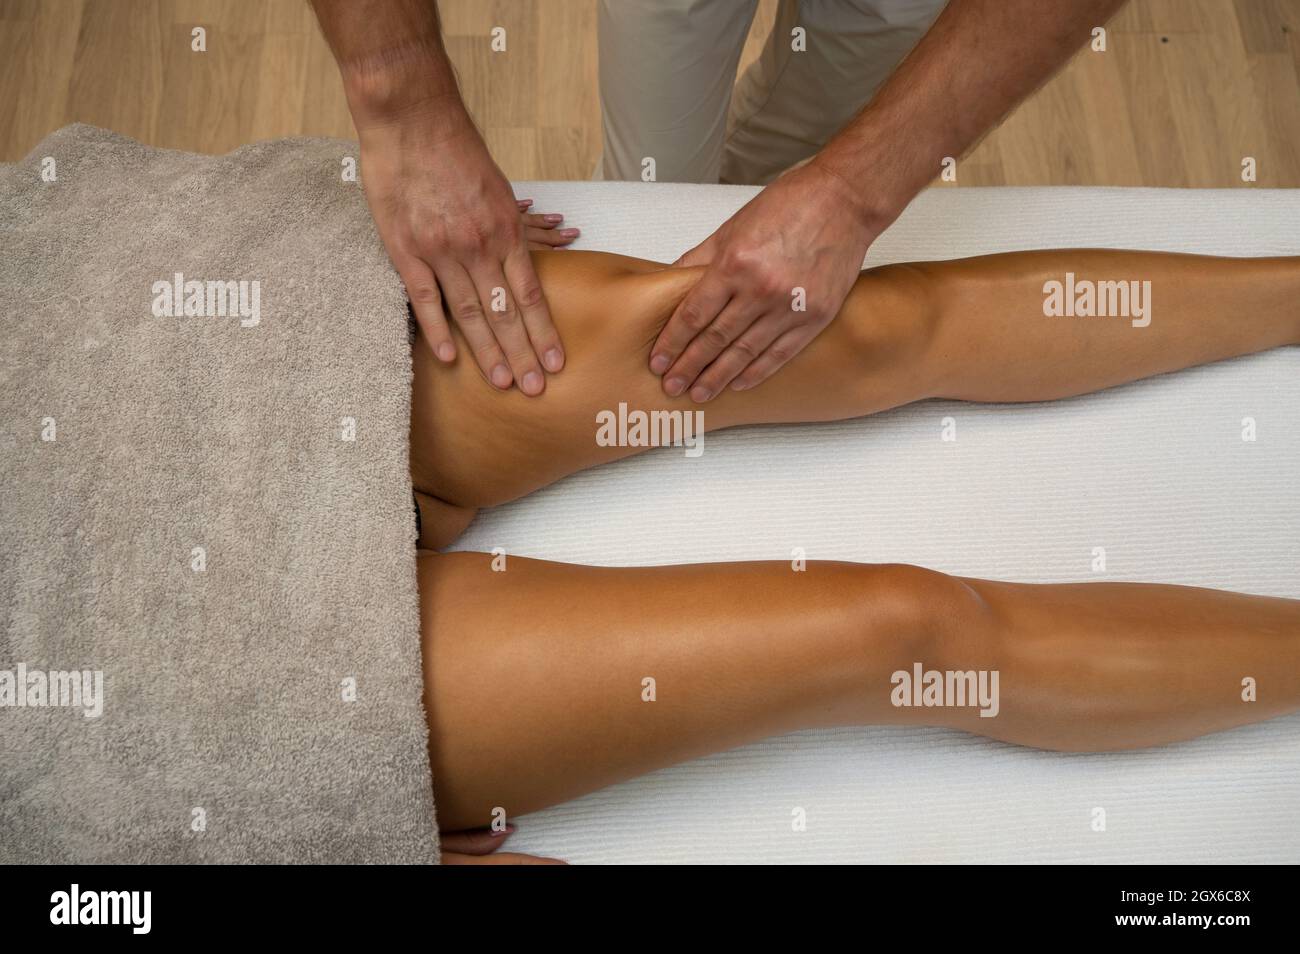 Massaggio linfodrenante immagini e fotografie stock ad alta risoluzione -  Alamy